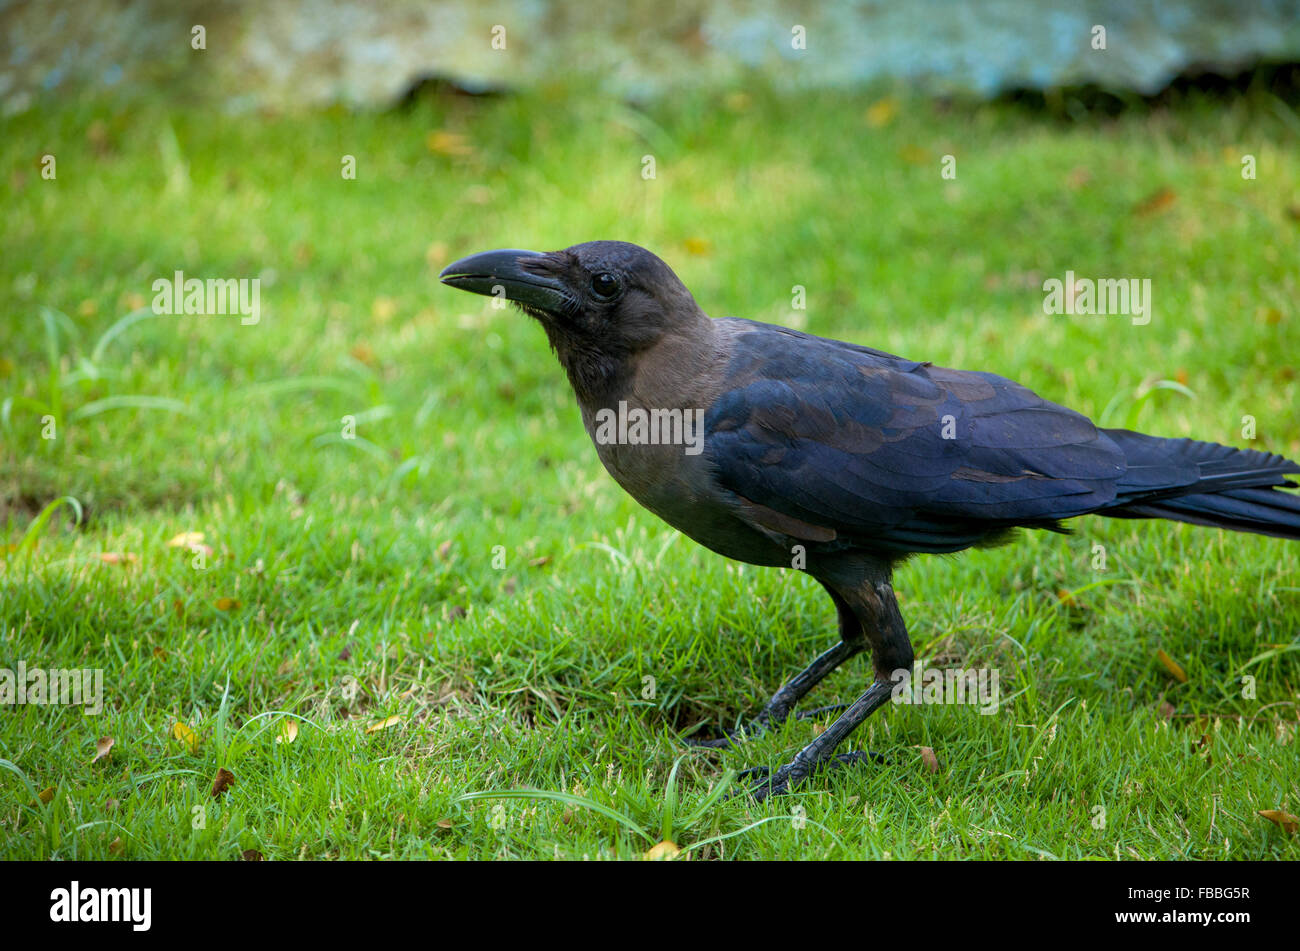 bird a black raven on a grass,a bird,a black raven in a grass,a raven,feathery,a bird goes,on a grass,a genus of birds from fami Stock Photo